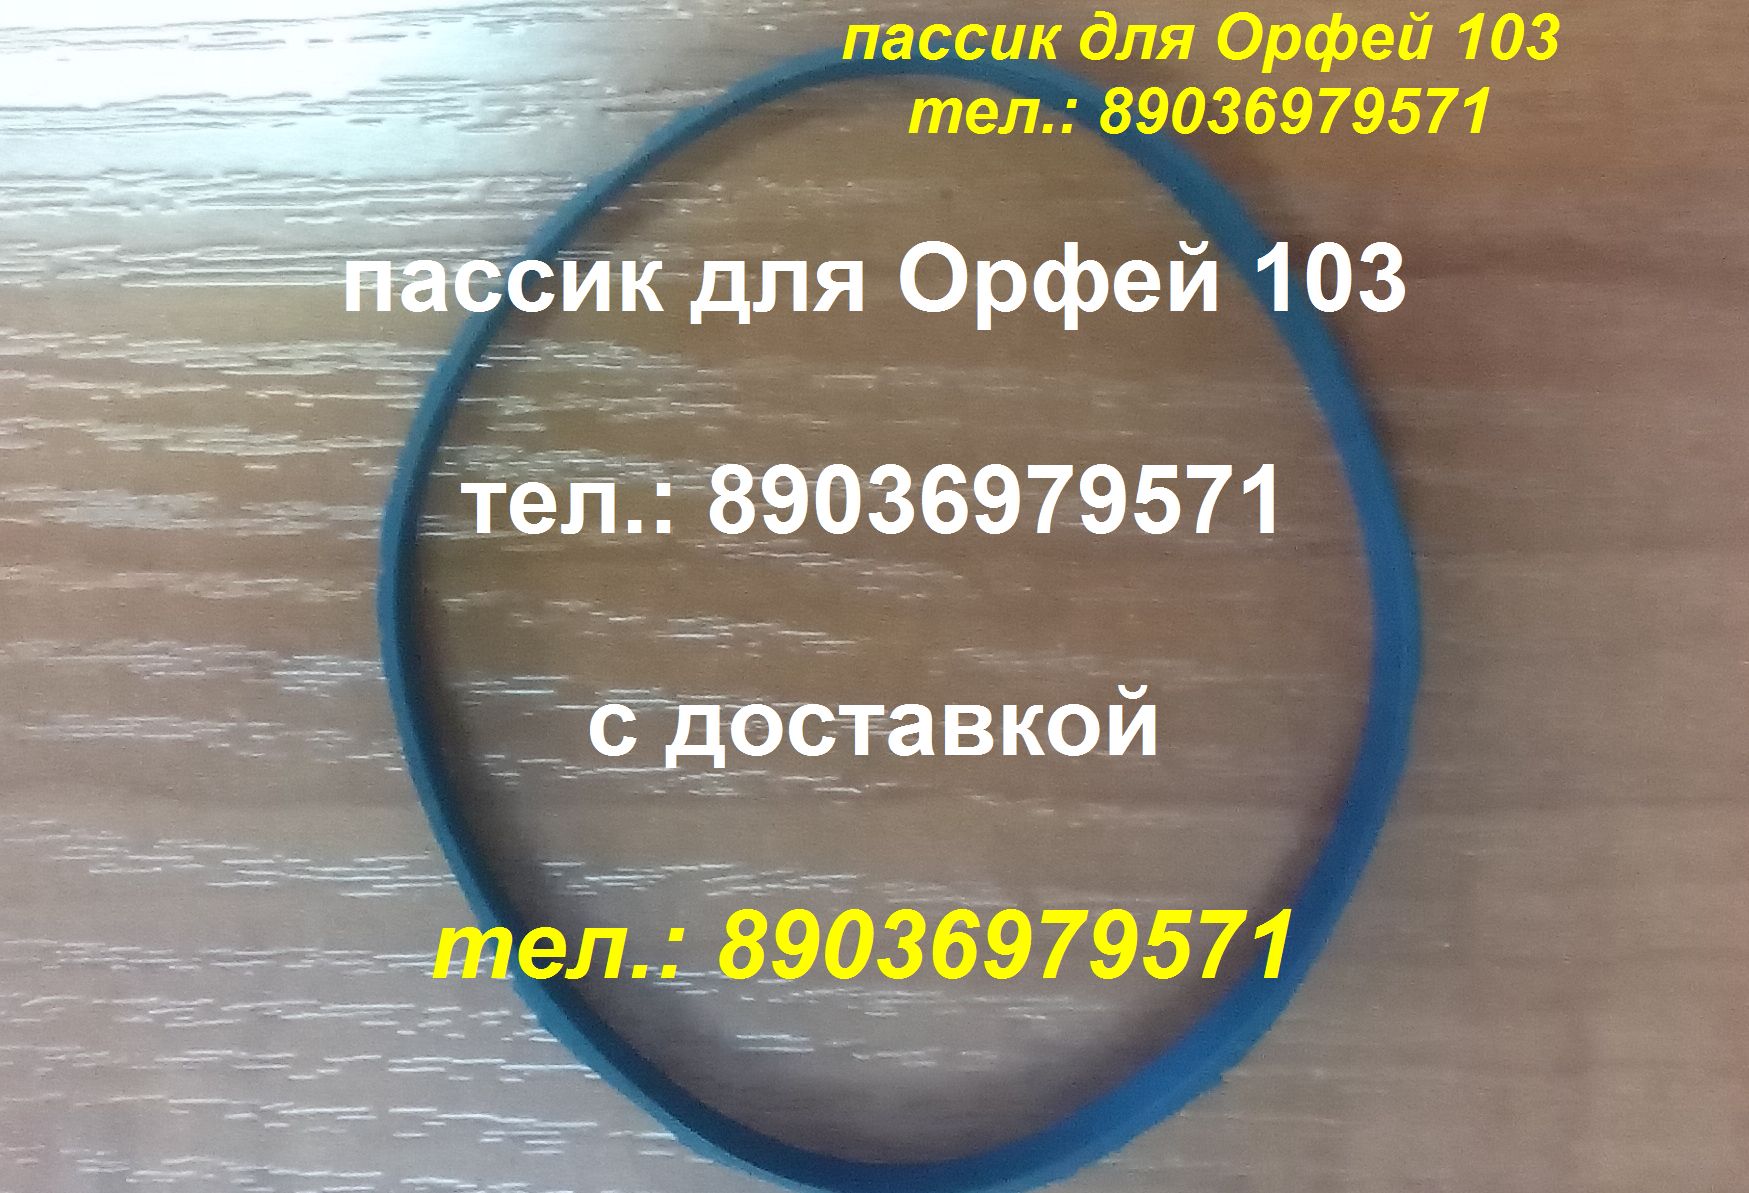 Пассик для Орфея 103 пассик для Орфей 103 пасик Орфей в городе Москва, фото 1, телефон продавца: +7 (903) 697-95-71